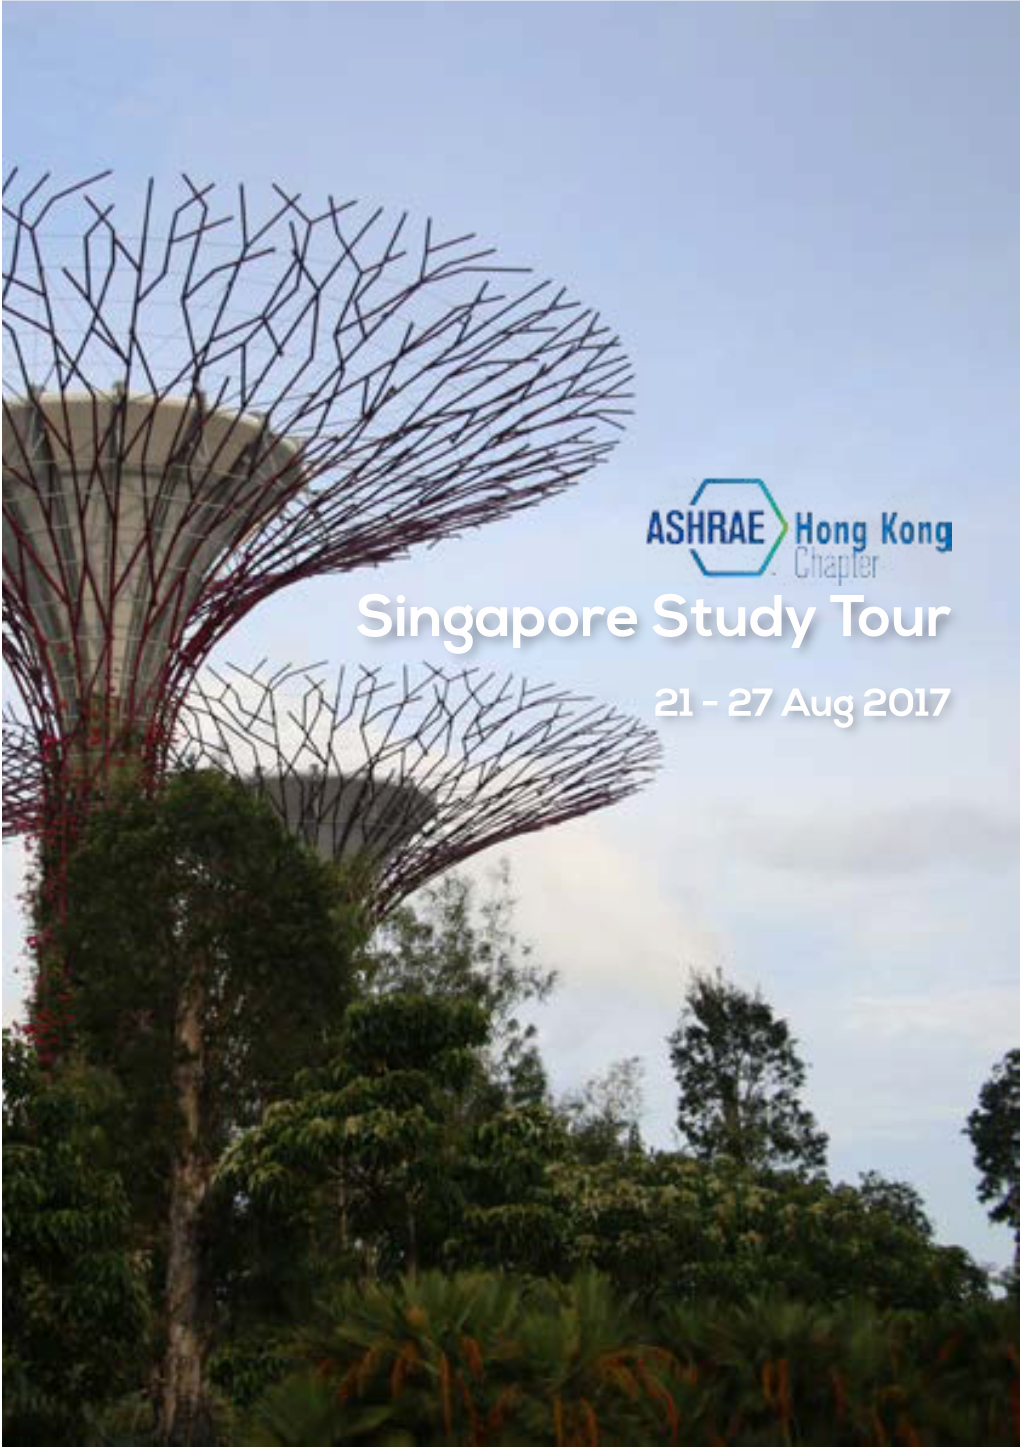 Singapore Study Tour 21 - 27 Aug 2017 Contents